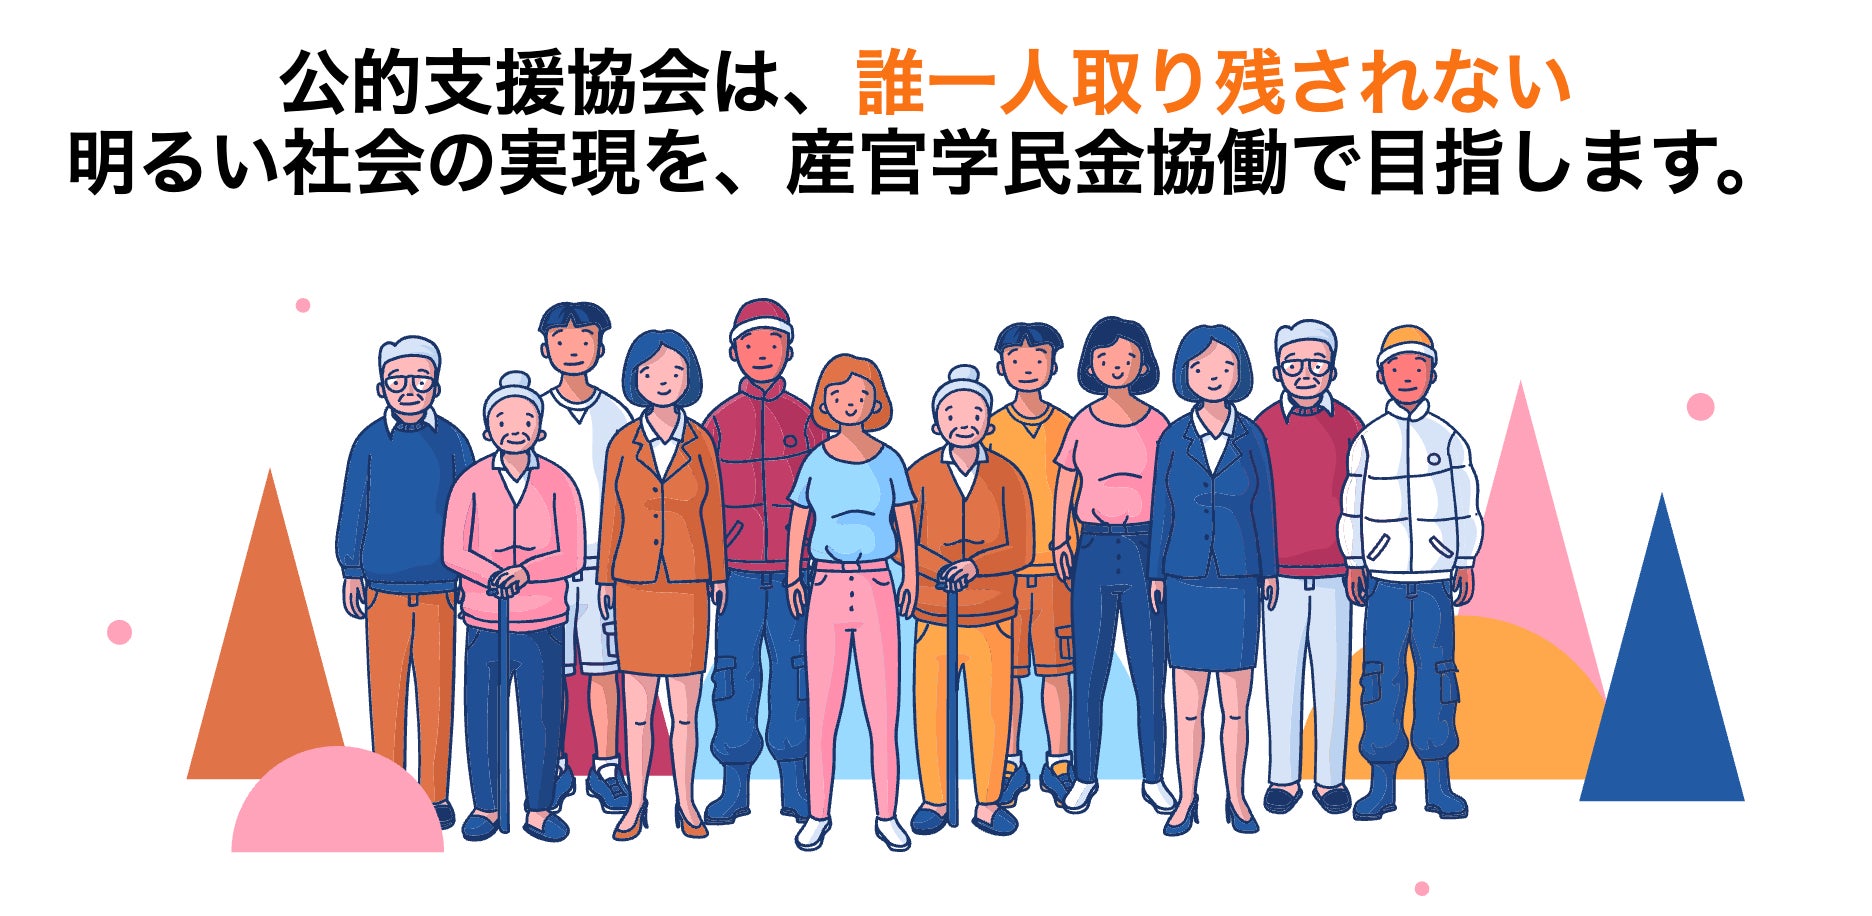 離婚にまつわる養育費・親権・住宅関連のセミナーを
三重県四日市市で10月27日に開催